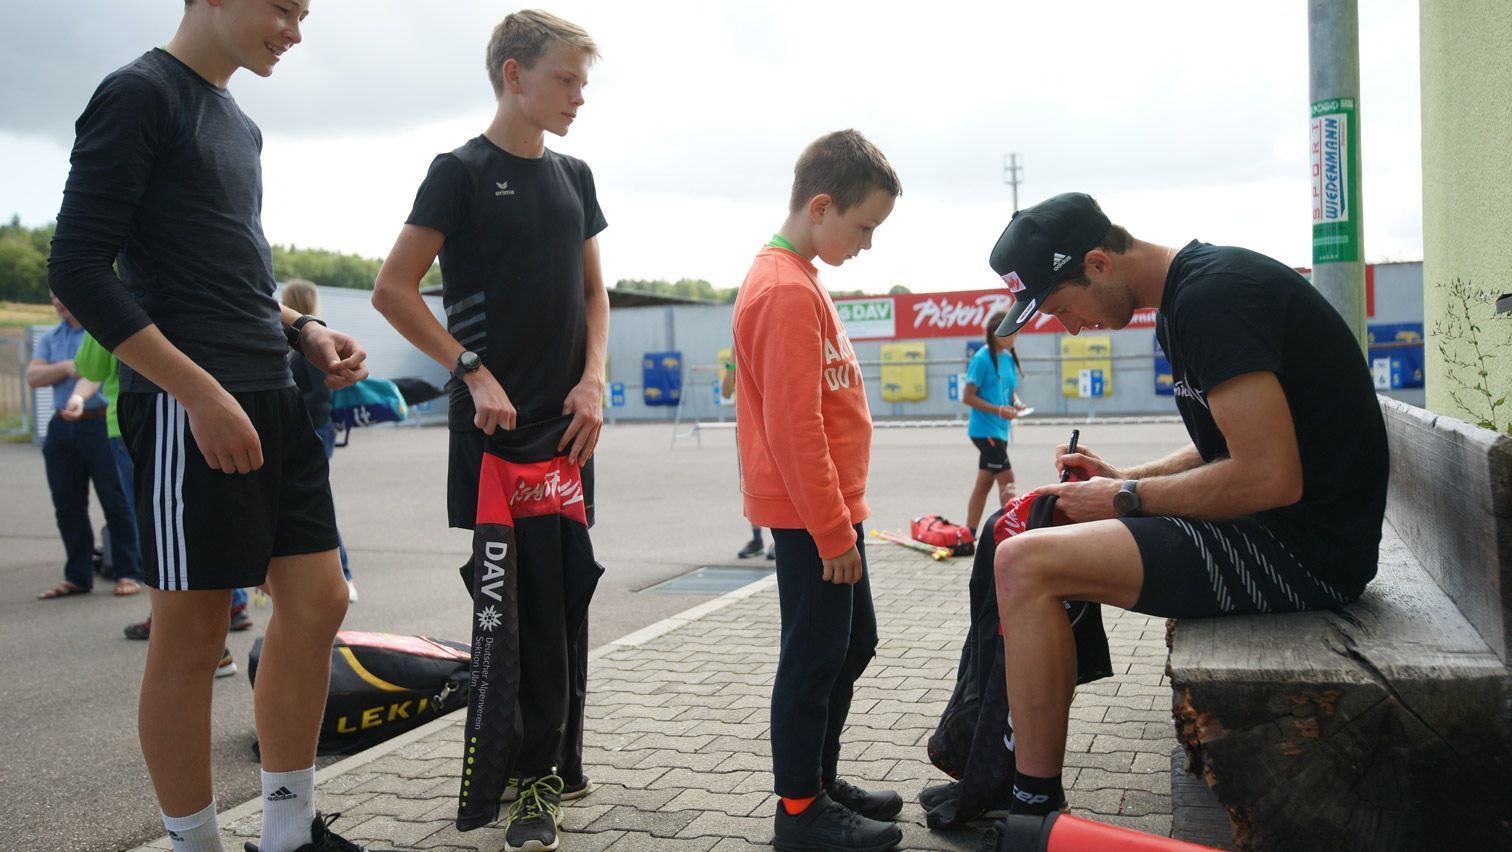 Schlange stehen bei der Autogrammstunde mit Profisportler Florian Notz